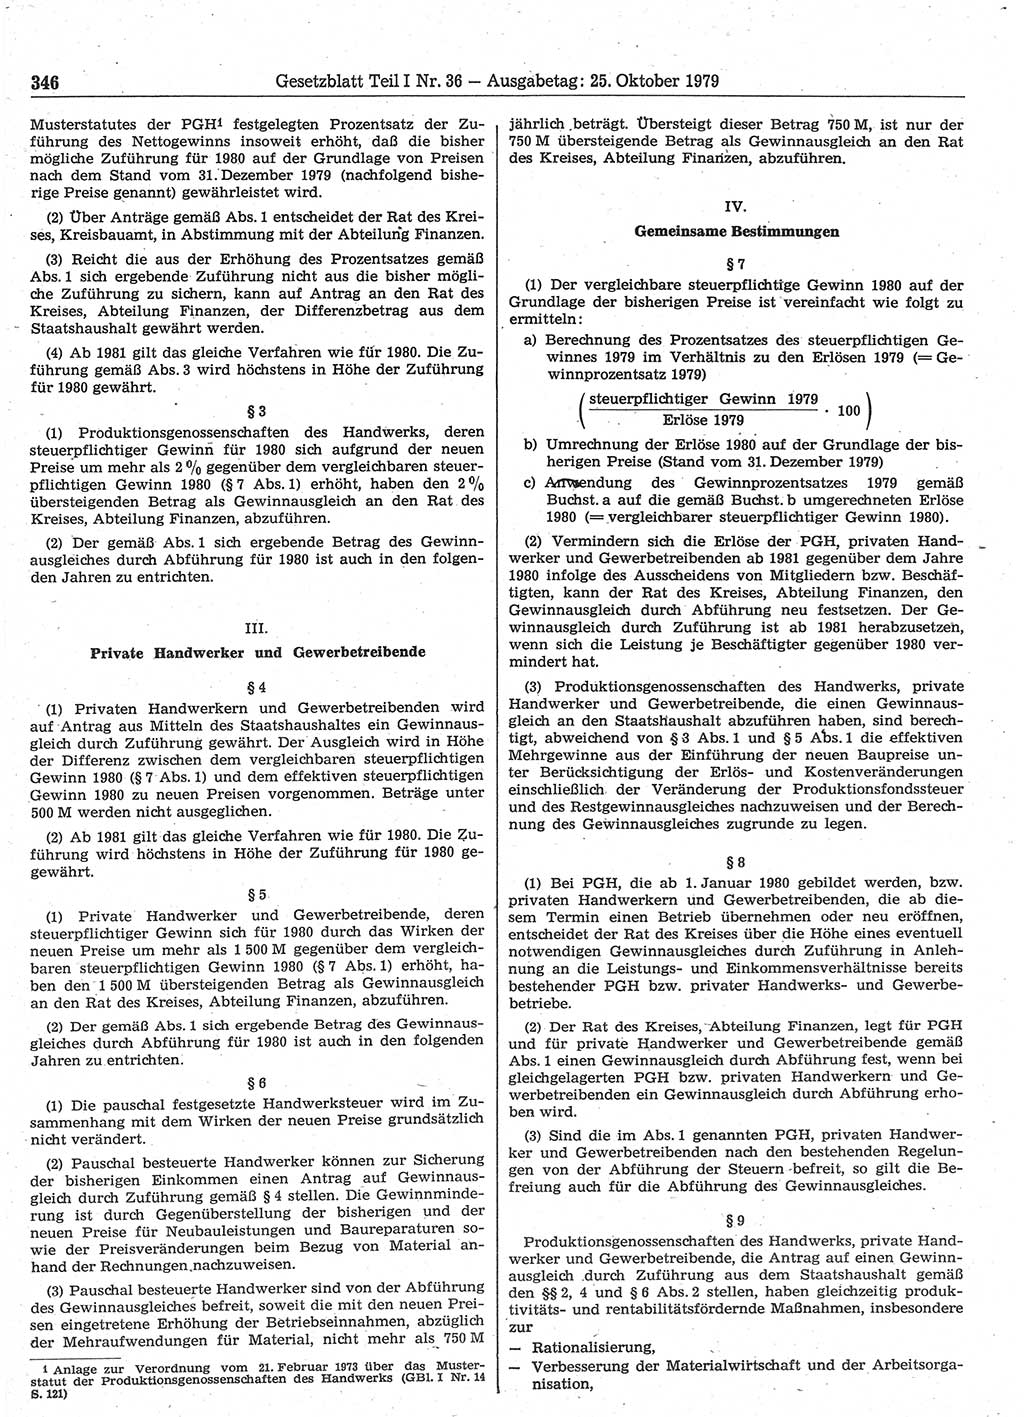 Gesetzblatt (GBl.) der Deutschen Demokratischen Republik (DDR) Teil Ⅰ 1979, Seite 346 (GBl. DDR Ⅰ 1979, S. 346)